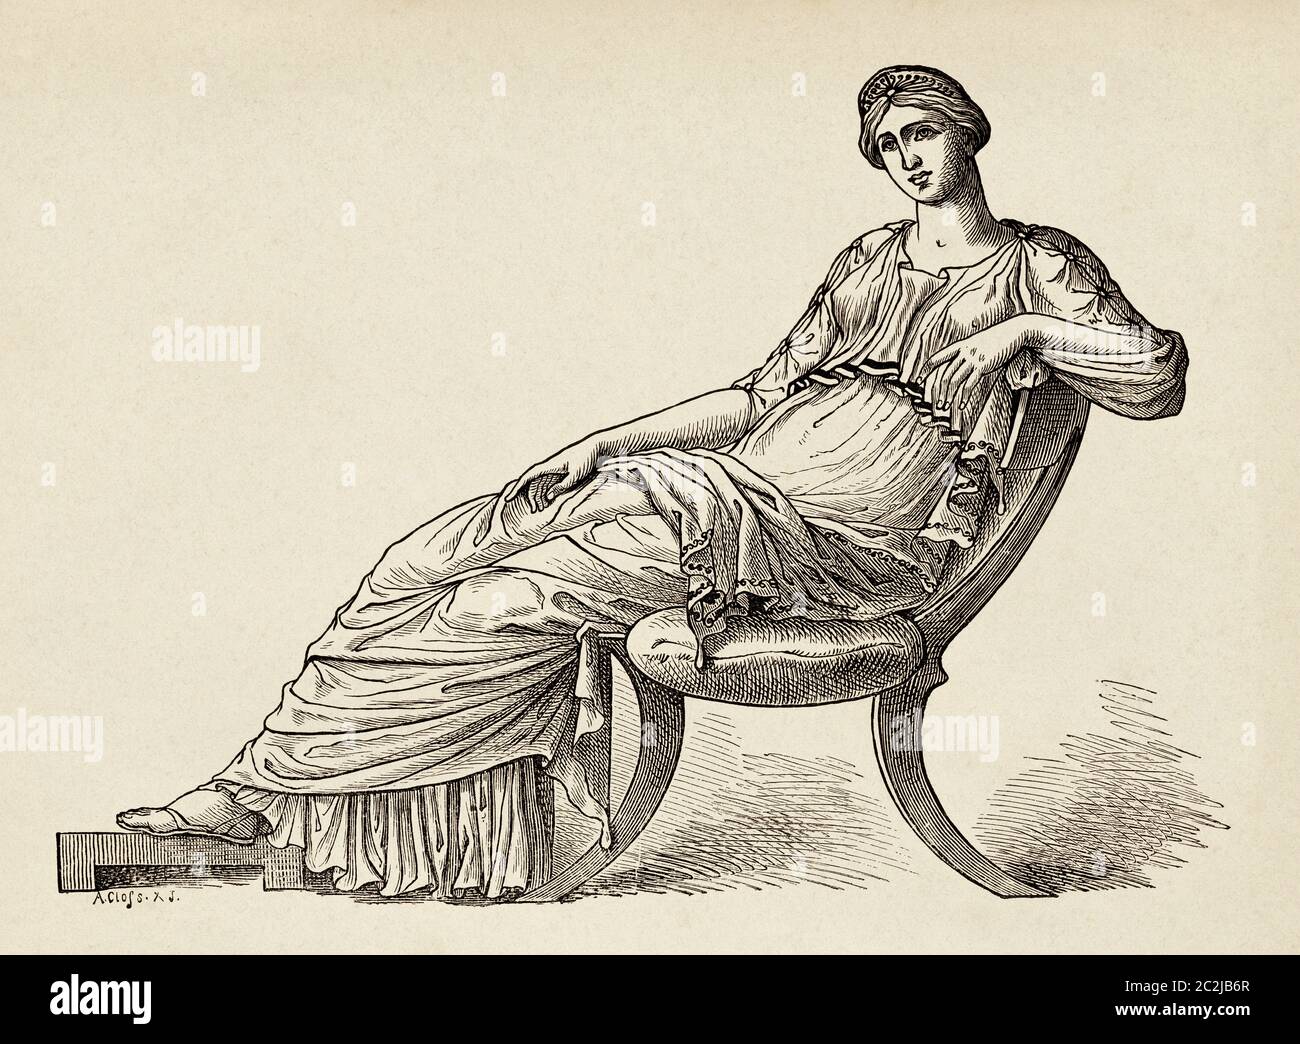 Griechische Frau sitzend, altes Griechenland. Alte Illustration aus dem 19. Jahrhundert, El Mundo Ilustrado 1880 Stockfoto